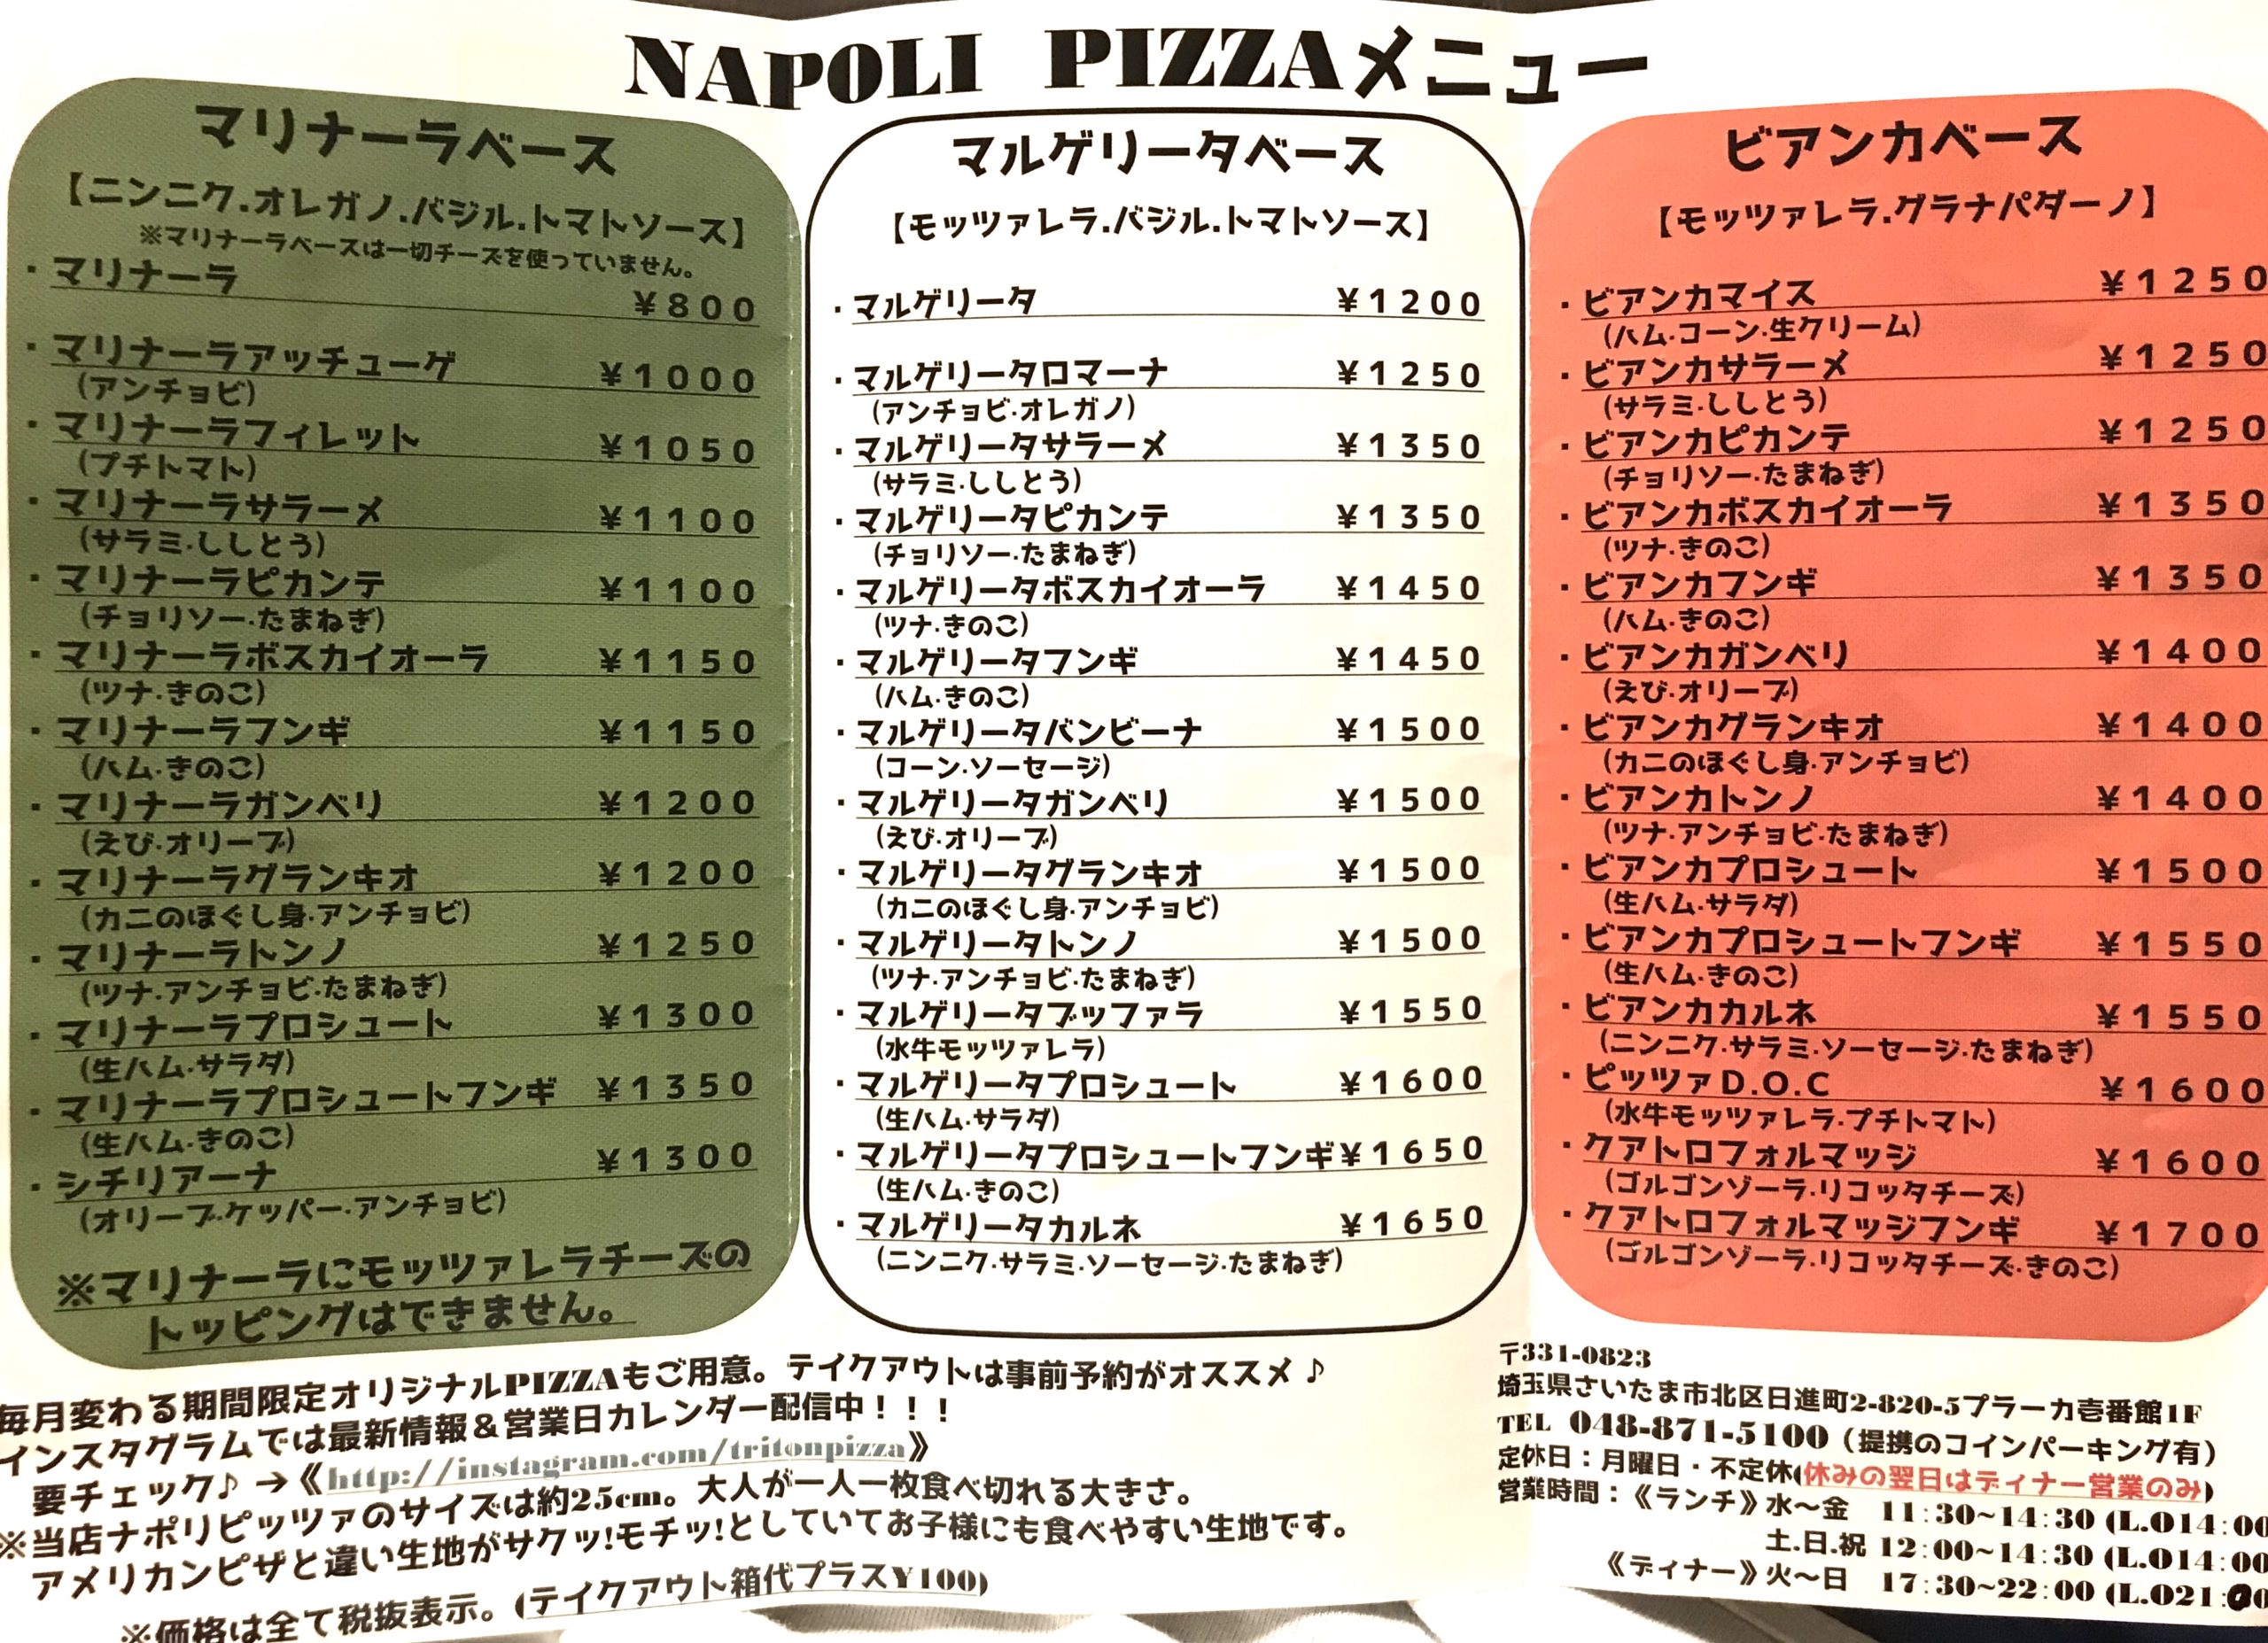 ピザ 日進の トリトン ピッツァ Triton Pizza 薪窯で焼くマルゲリータが美味しいから週一で食べたい